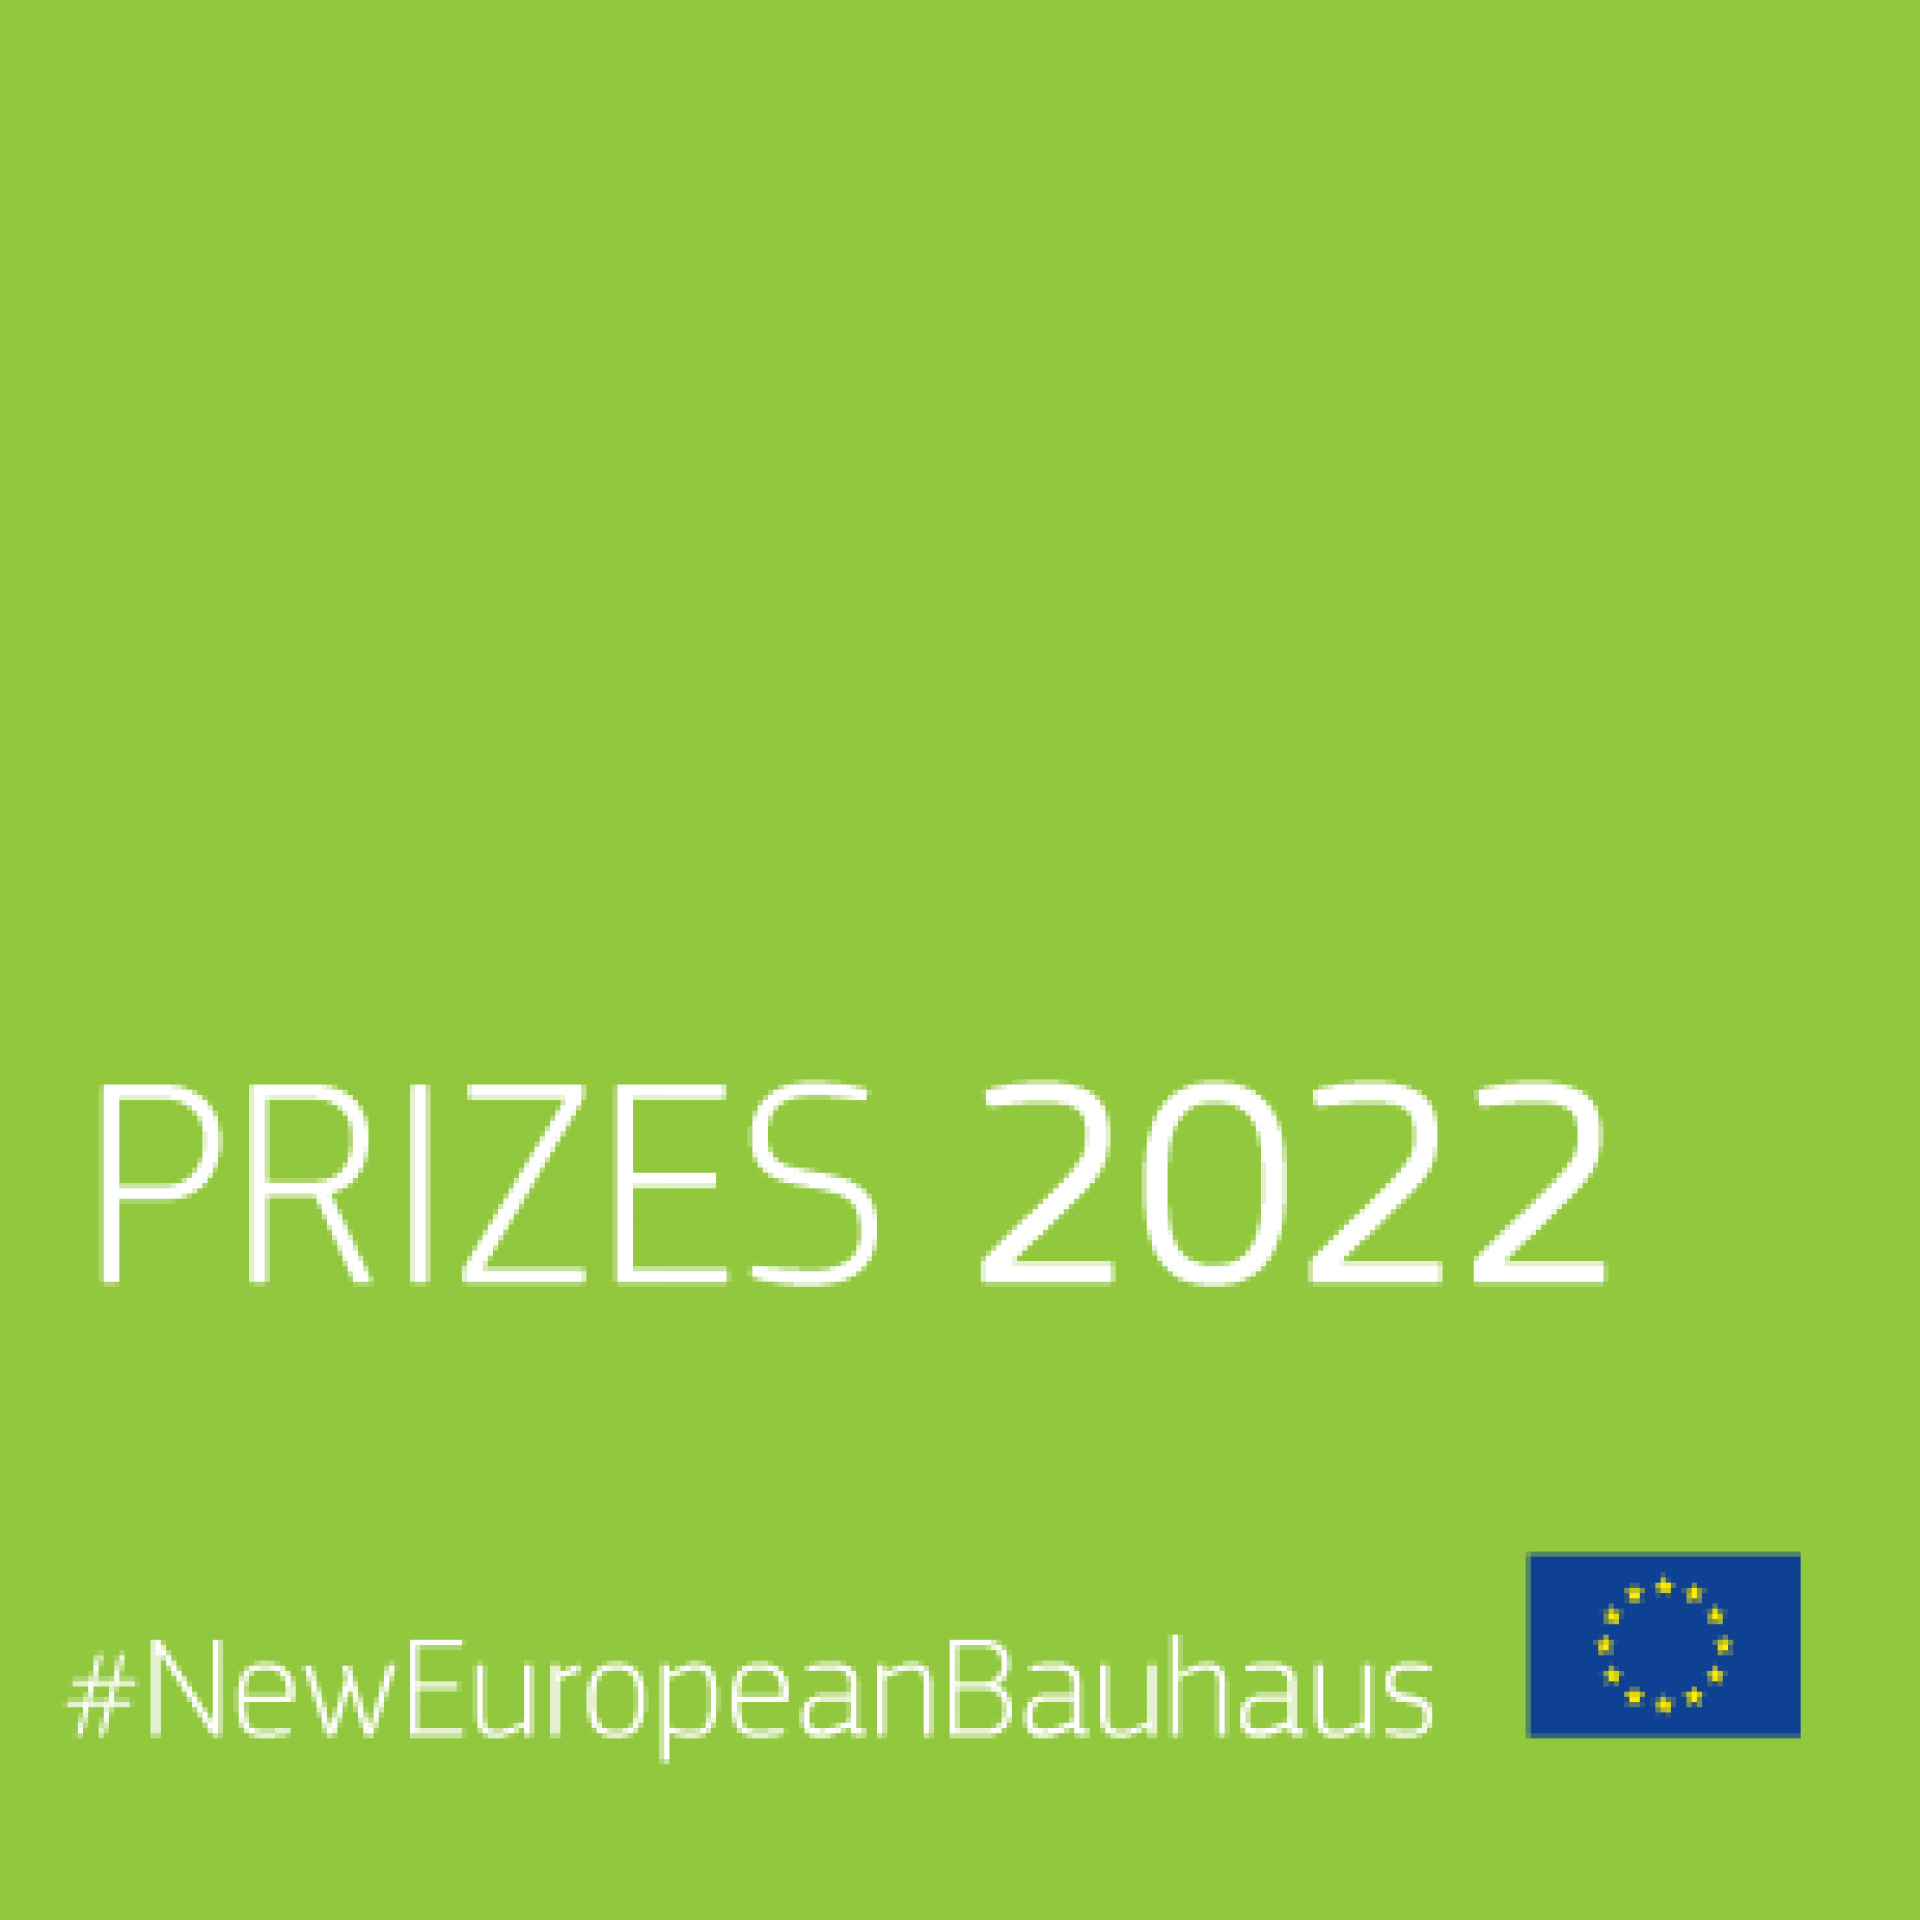 Novi evropski Bauhaus: nagrade 2022

